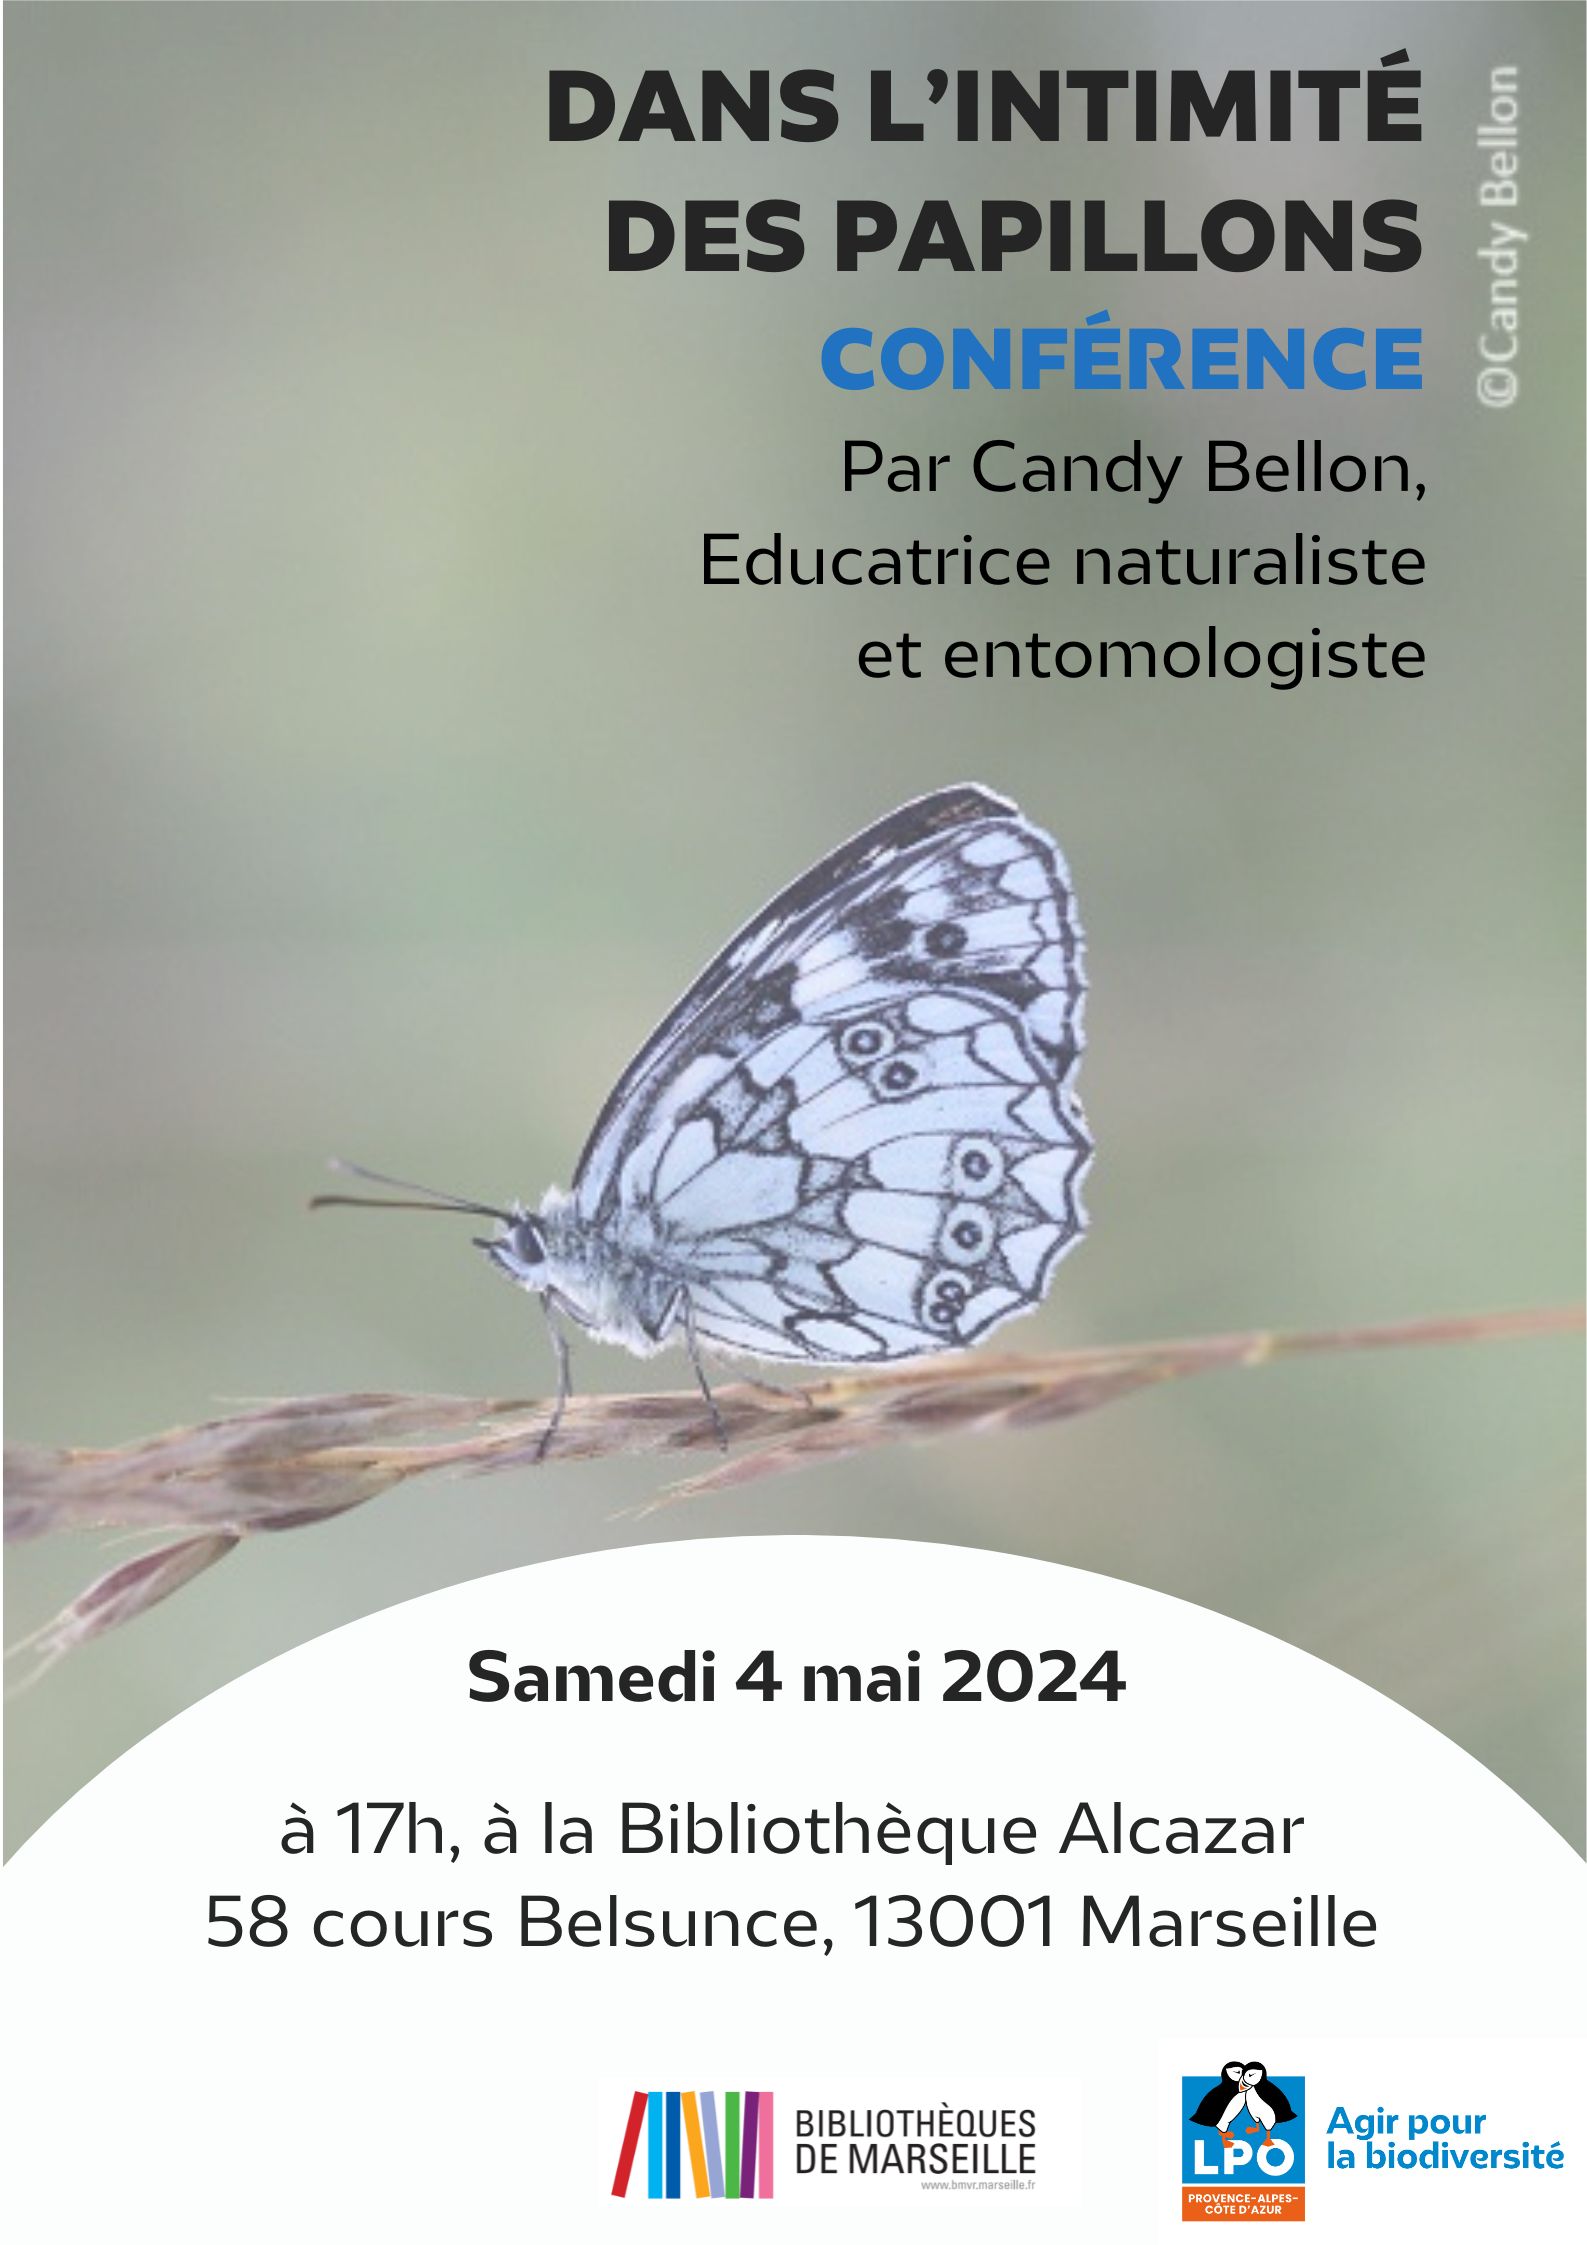 Affiche conférence papillons Candy Bellon